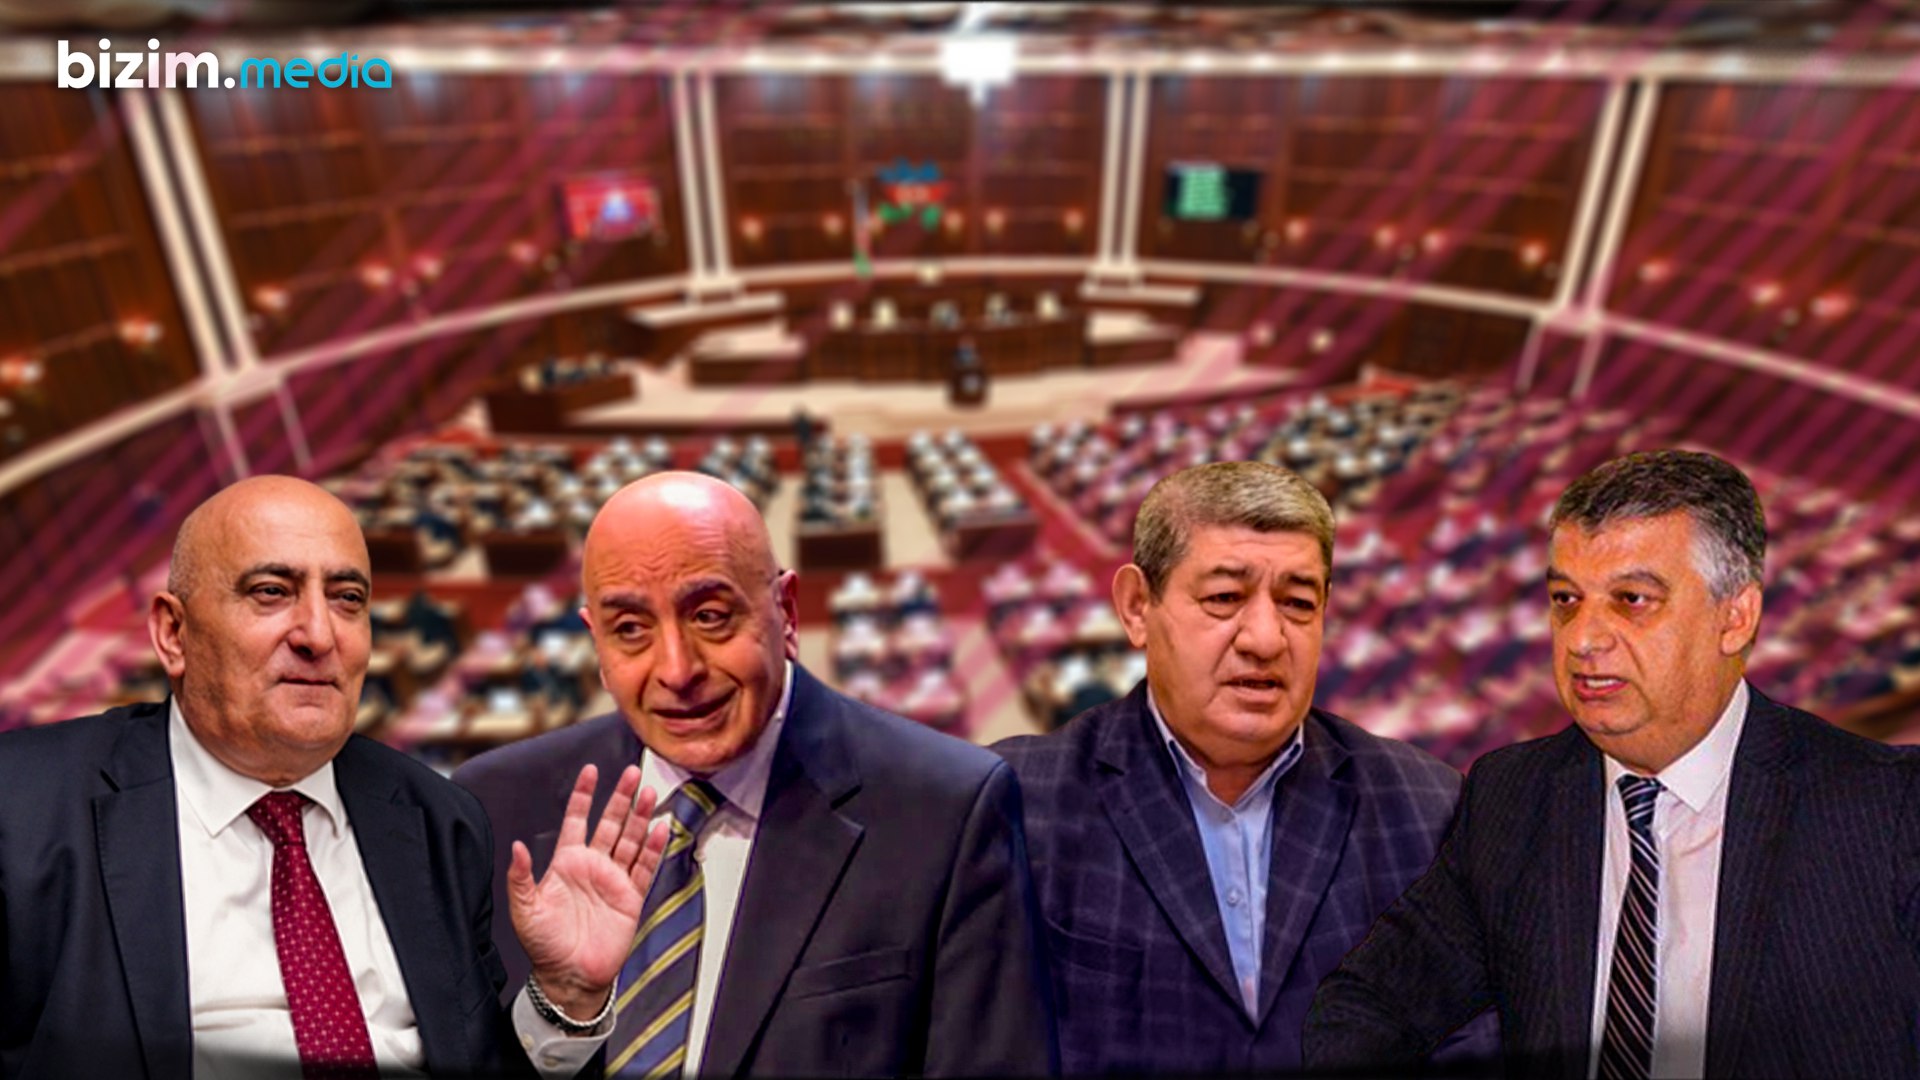 Müxalifət sıralarını tərk edib, deputat seçilən siyasətçilər – ARAŞDIRMA 